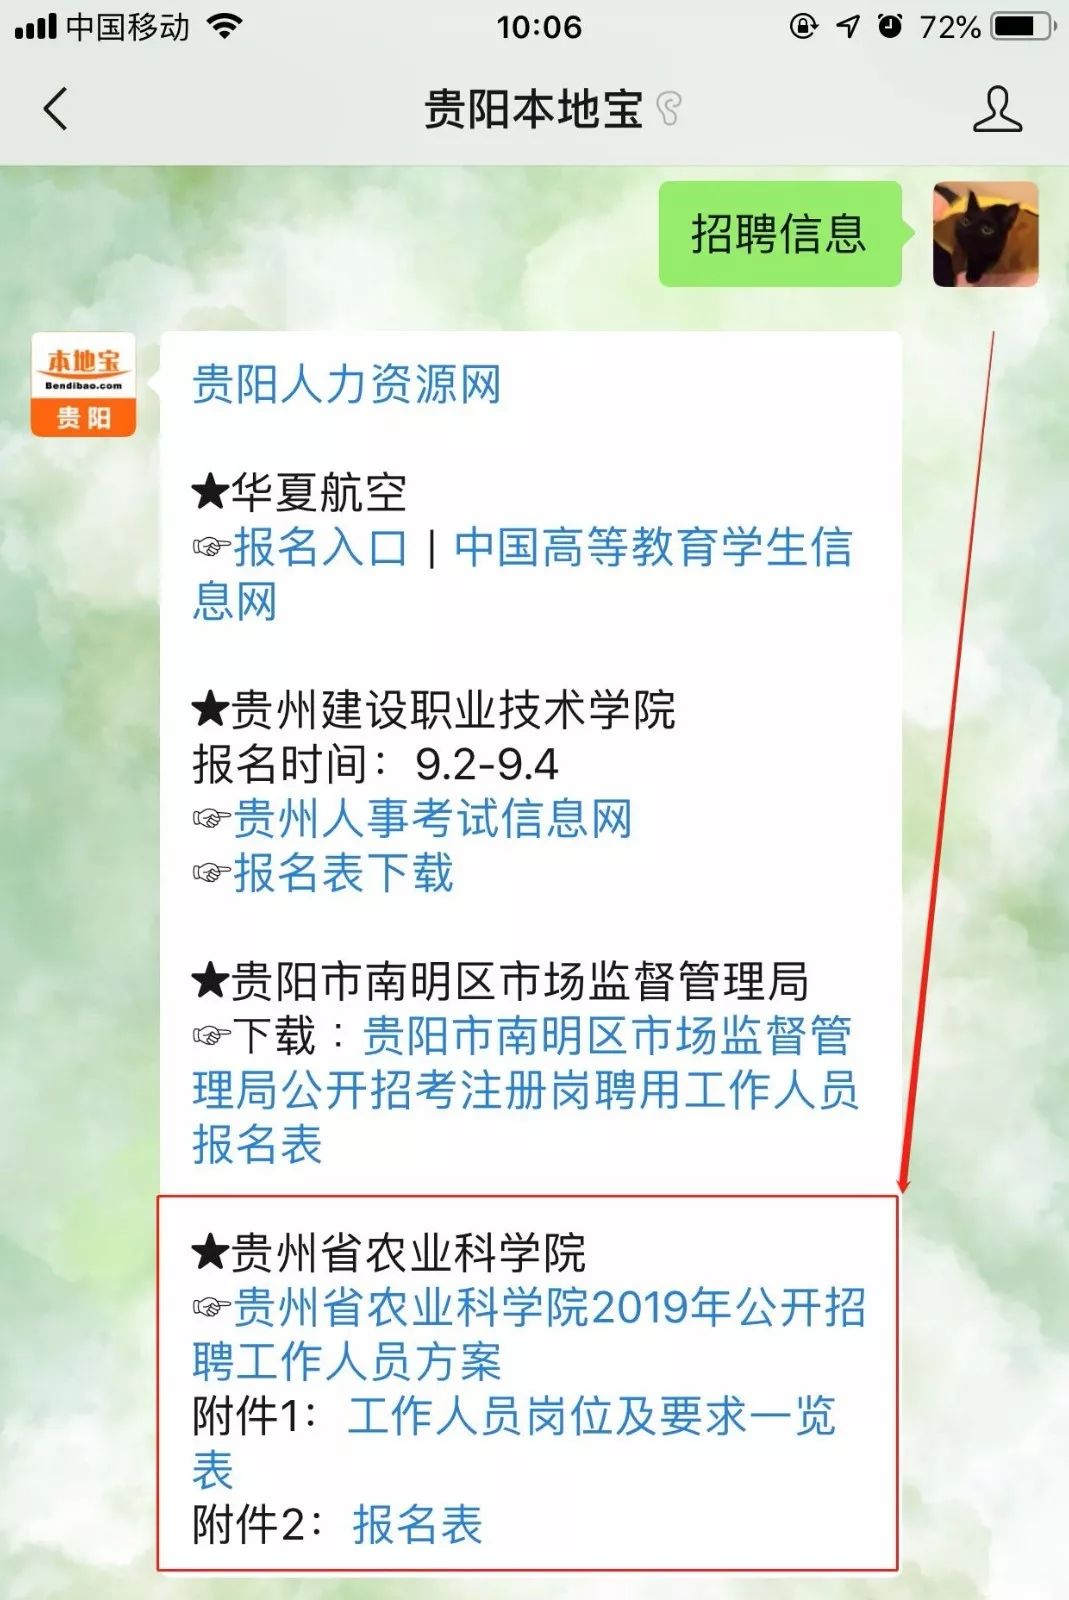 医院药剂科招聘_重庆高新区多部门联合发布 限制三轮车通行的通告(2)